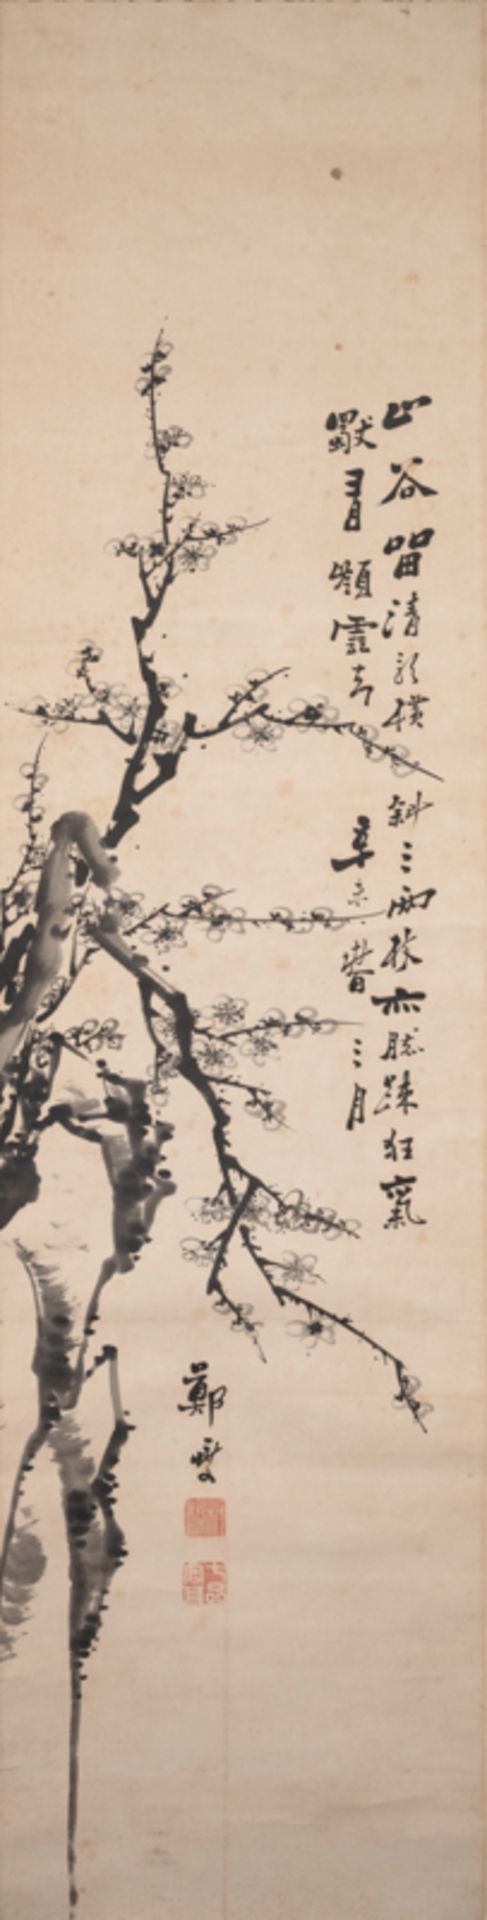 ZHENG BANQIAO (1693-1766), PLUM BLOSSOM 鄭板橋 墨梅